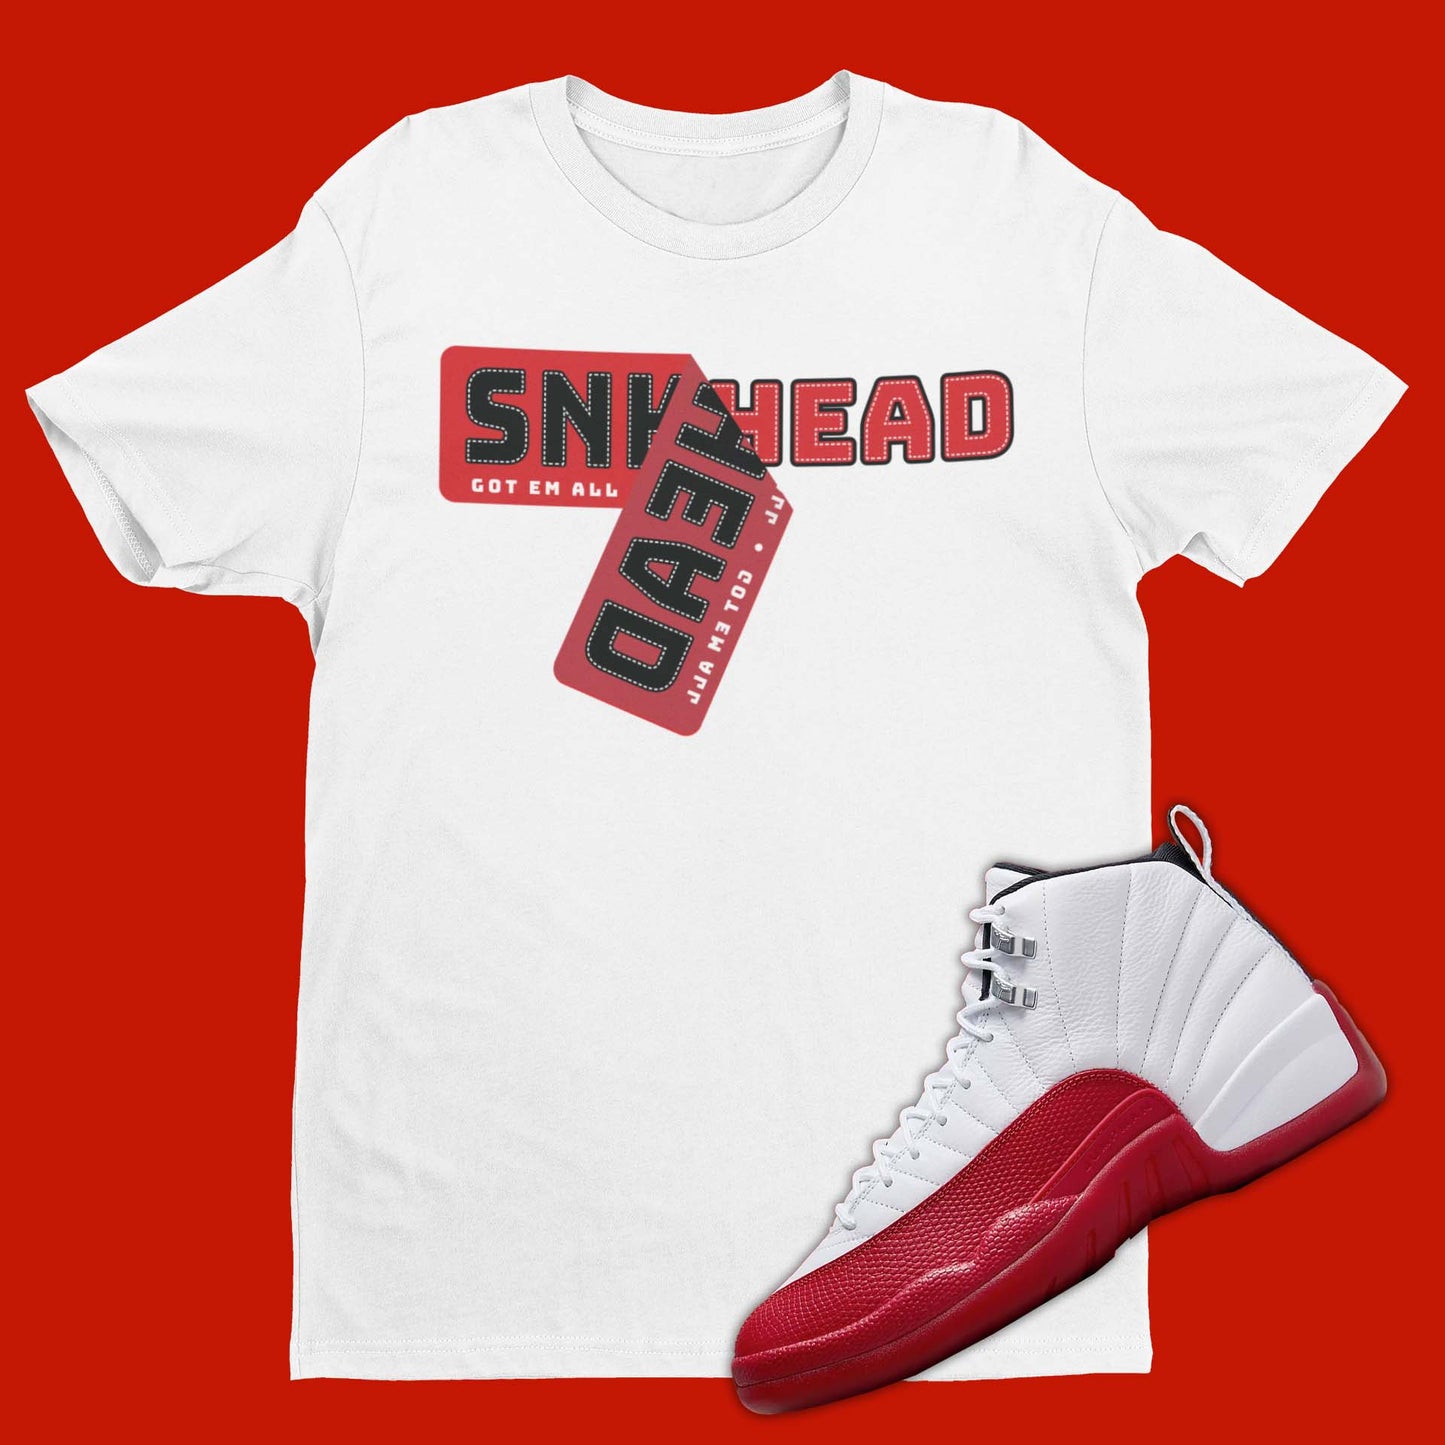 Sneaker Sticker Air Jordan 12 Cherry Matching T-Shirt from SNKADX